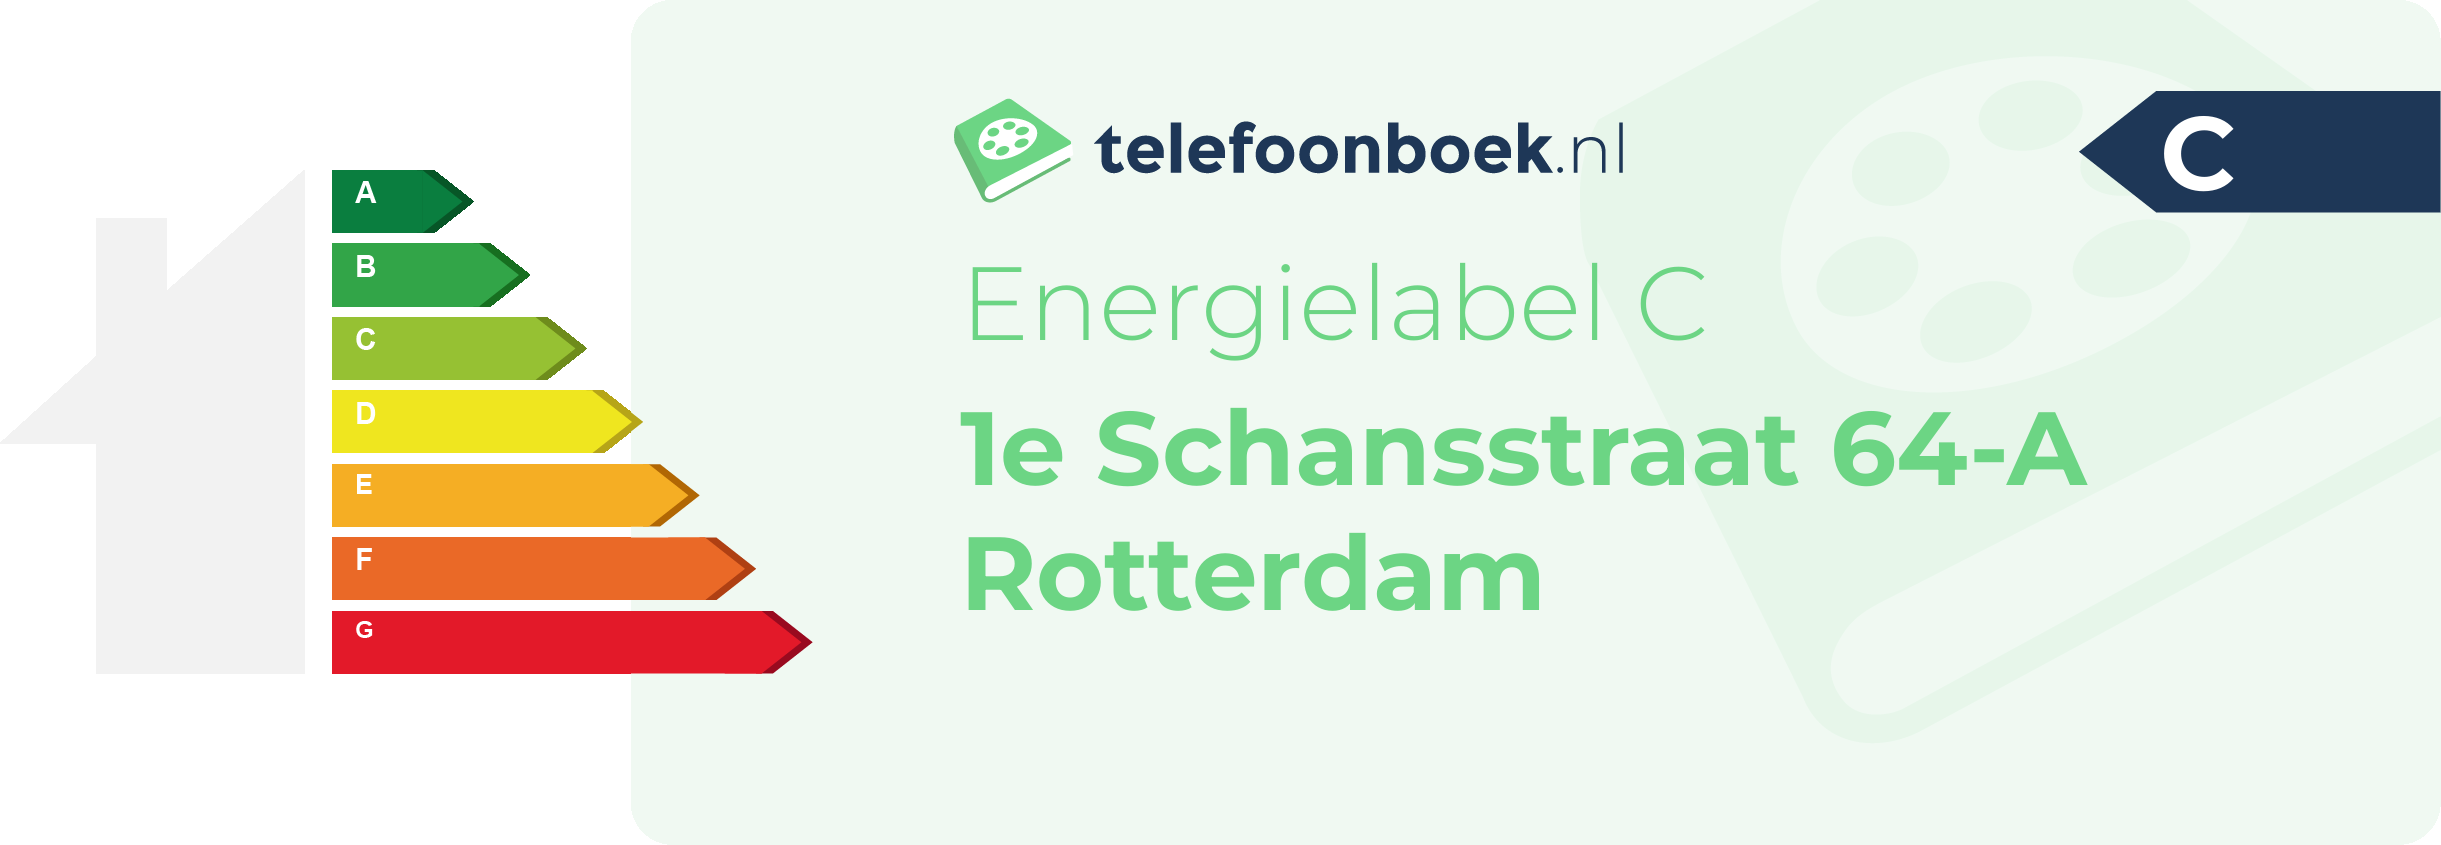 Energielabel 1e Schansstraat 64-A Rotterdam